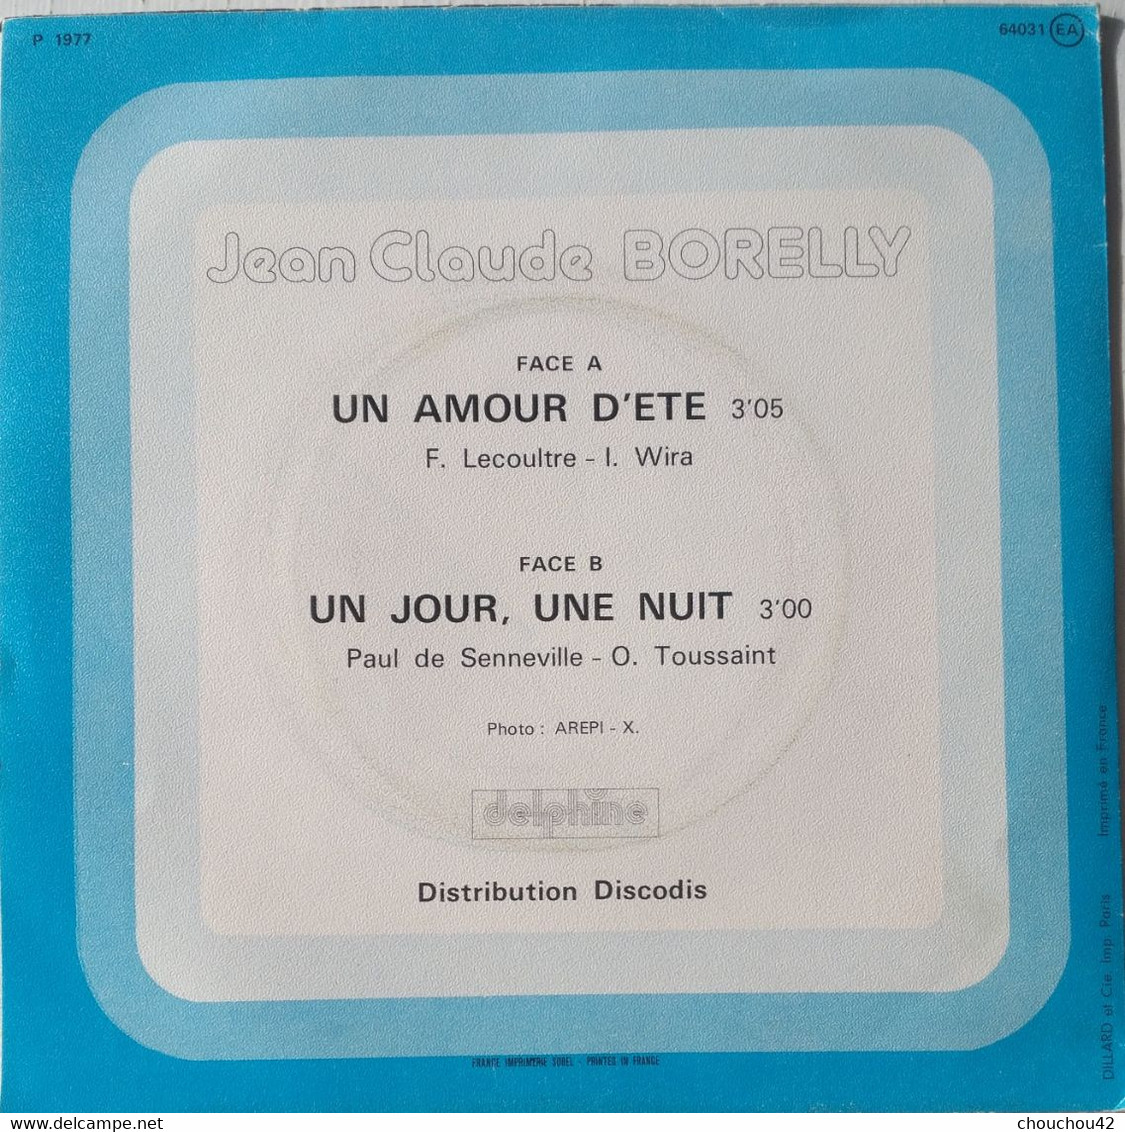 JEAN CLAUDE BORELLY UN AMOUR D'ETE - Instrumental